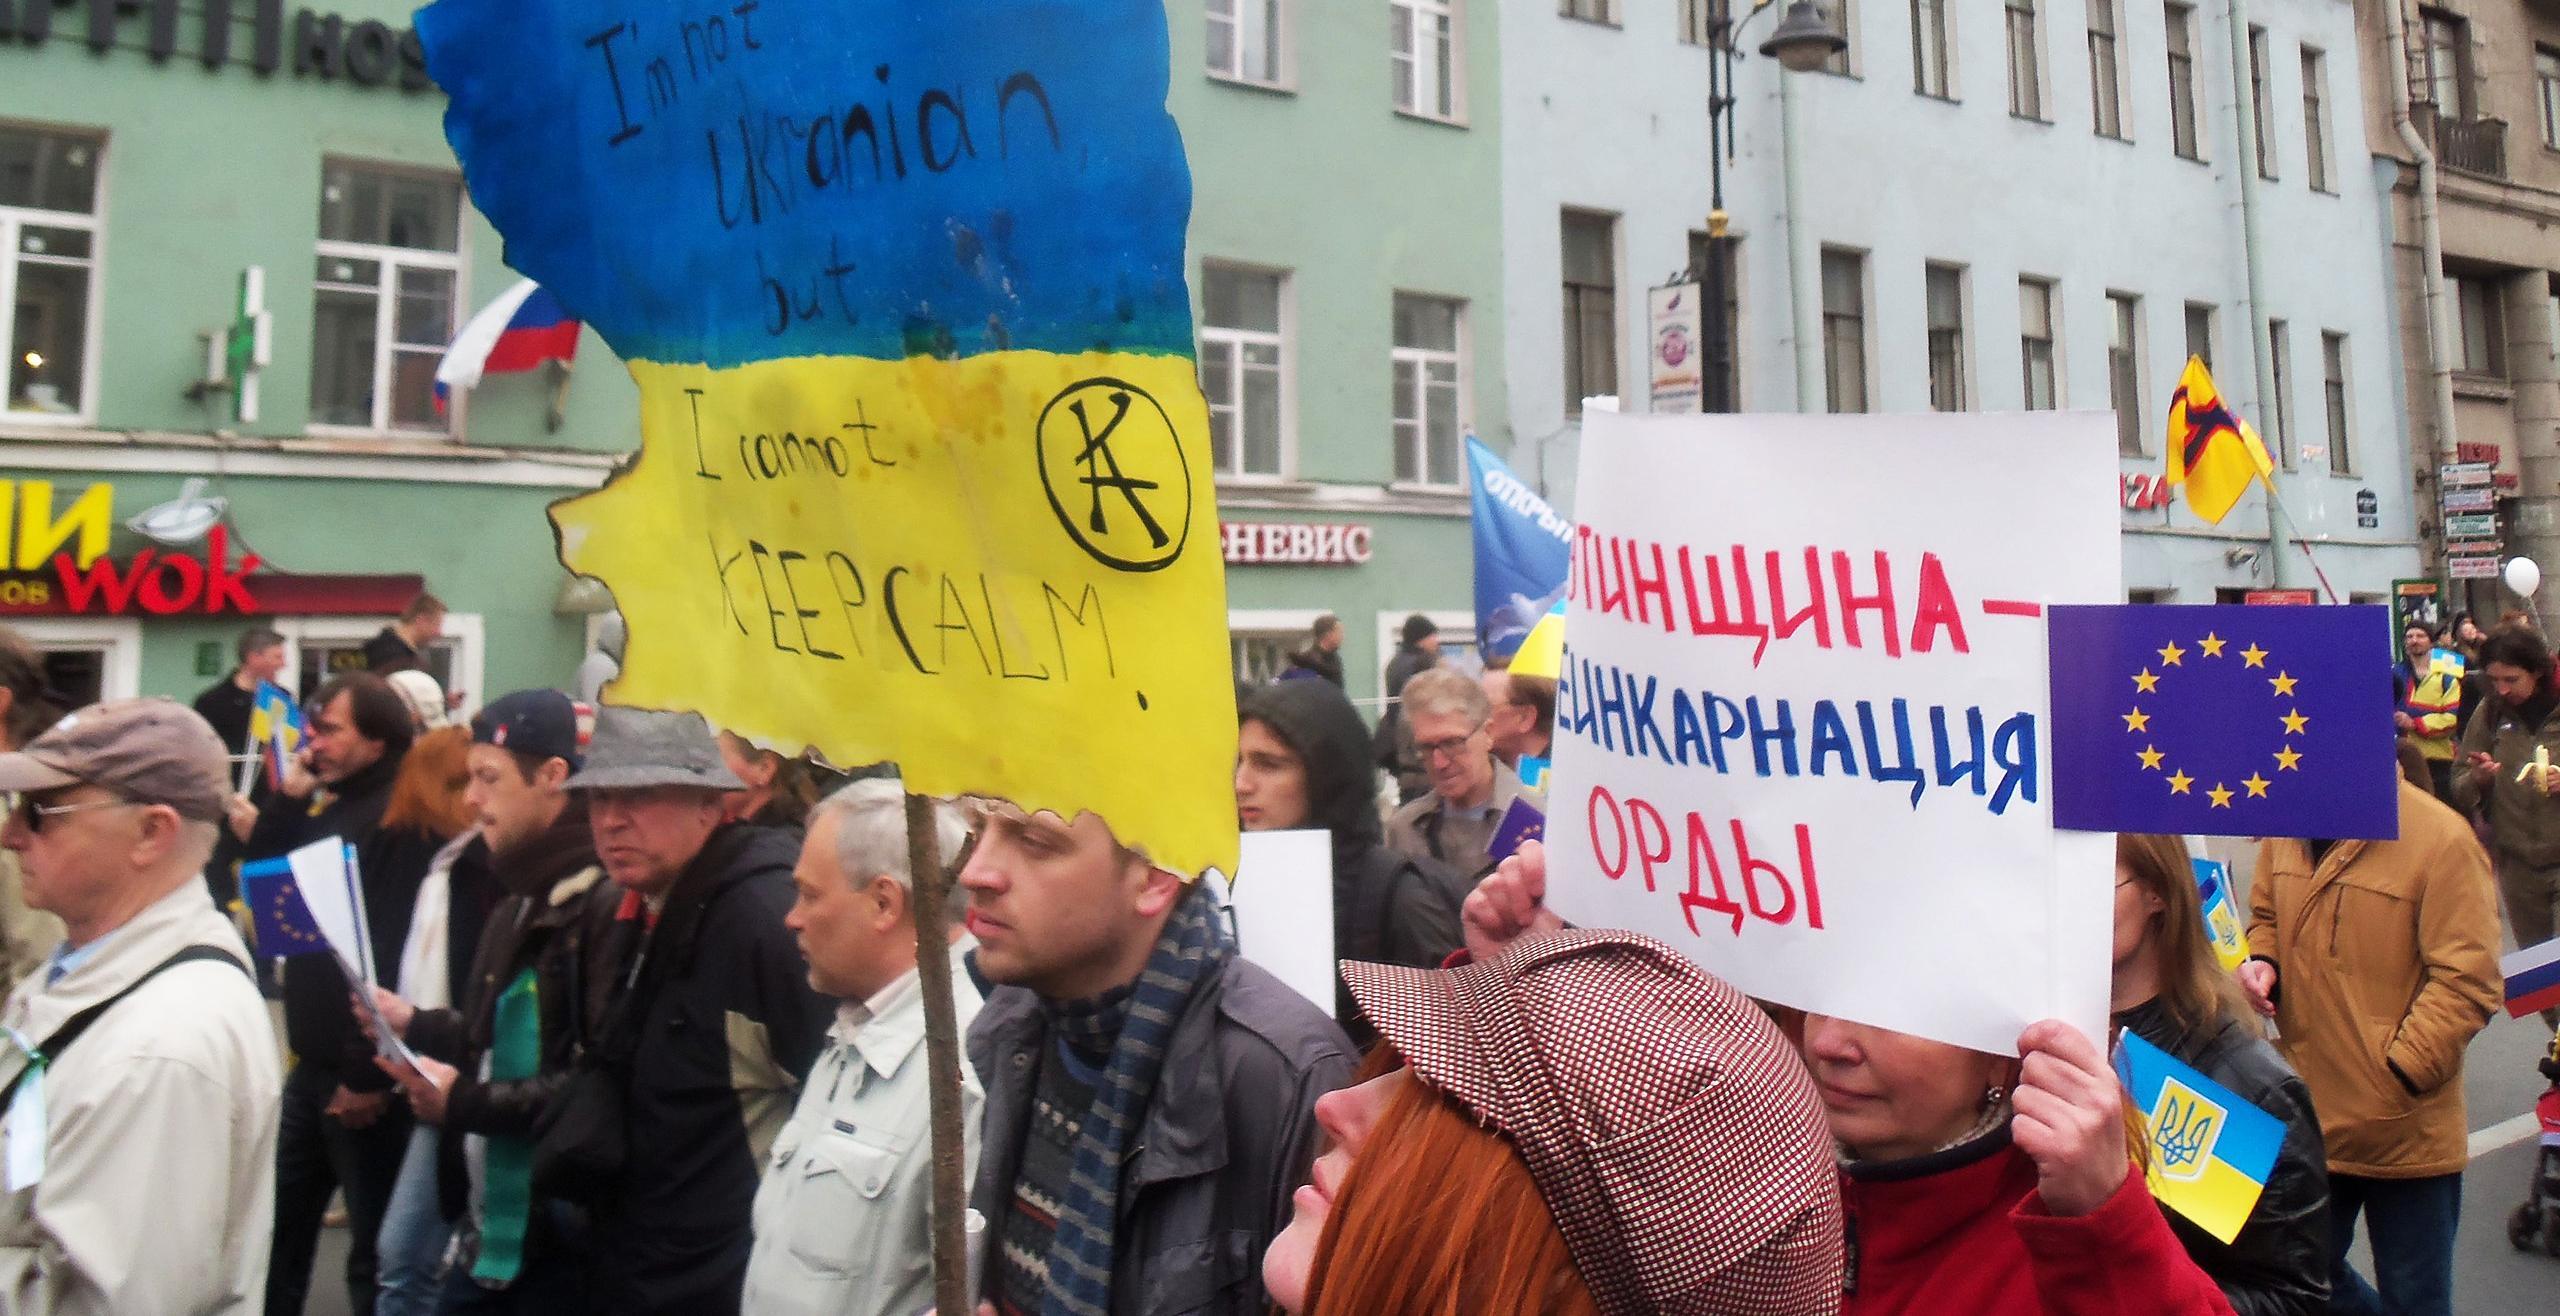 Een beeld van de antioorlogsprotesten in Moskou. Op een plakkaat staat 'I am not Ukranian, but I cannot keep calm'